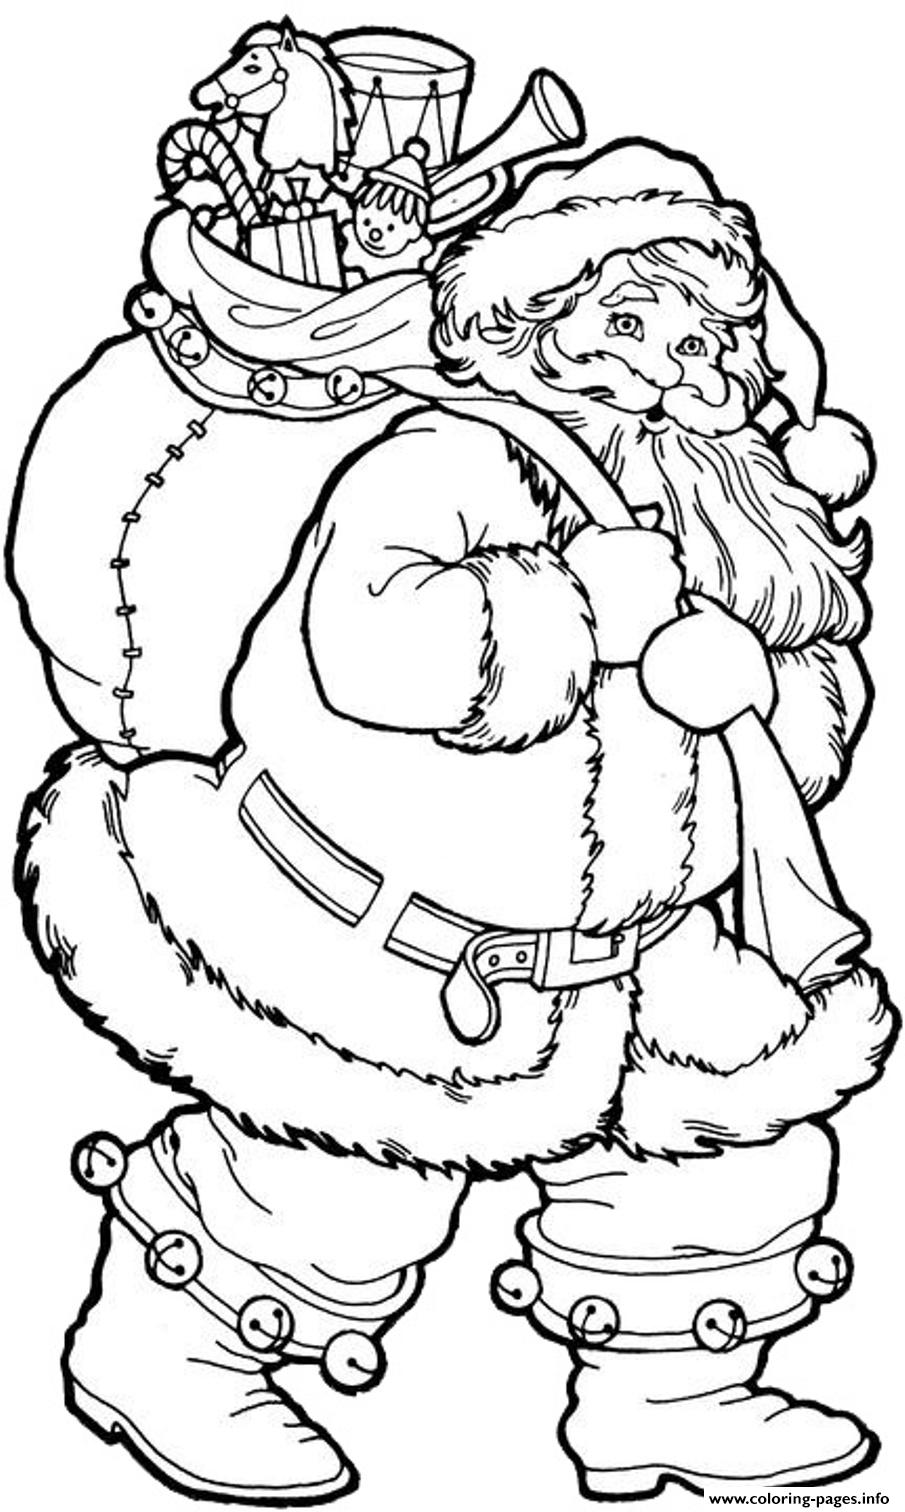 Christmas S Printable Santa With Big Presents1338 coloring